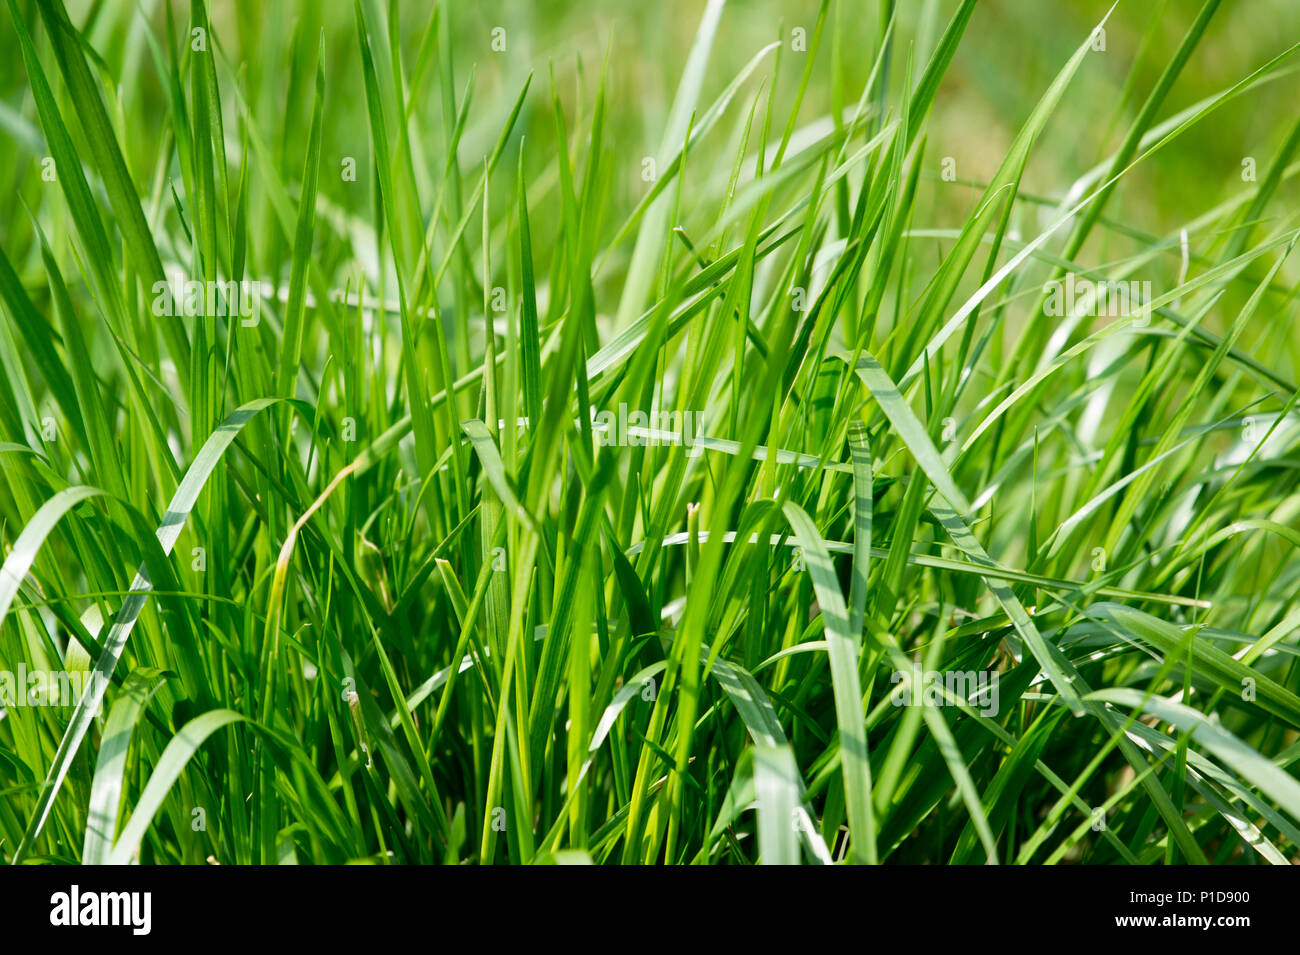 Green grass background/ green grass closeup Stock Photo - Alamy